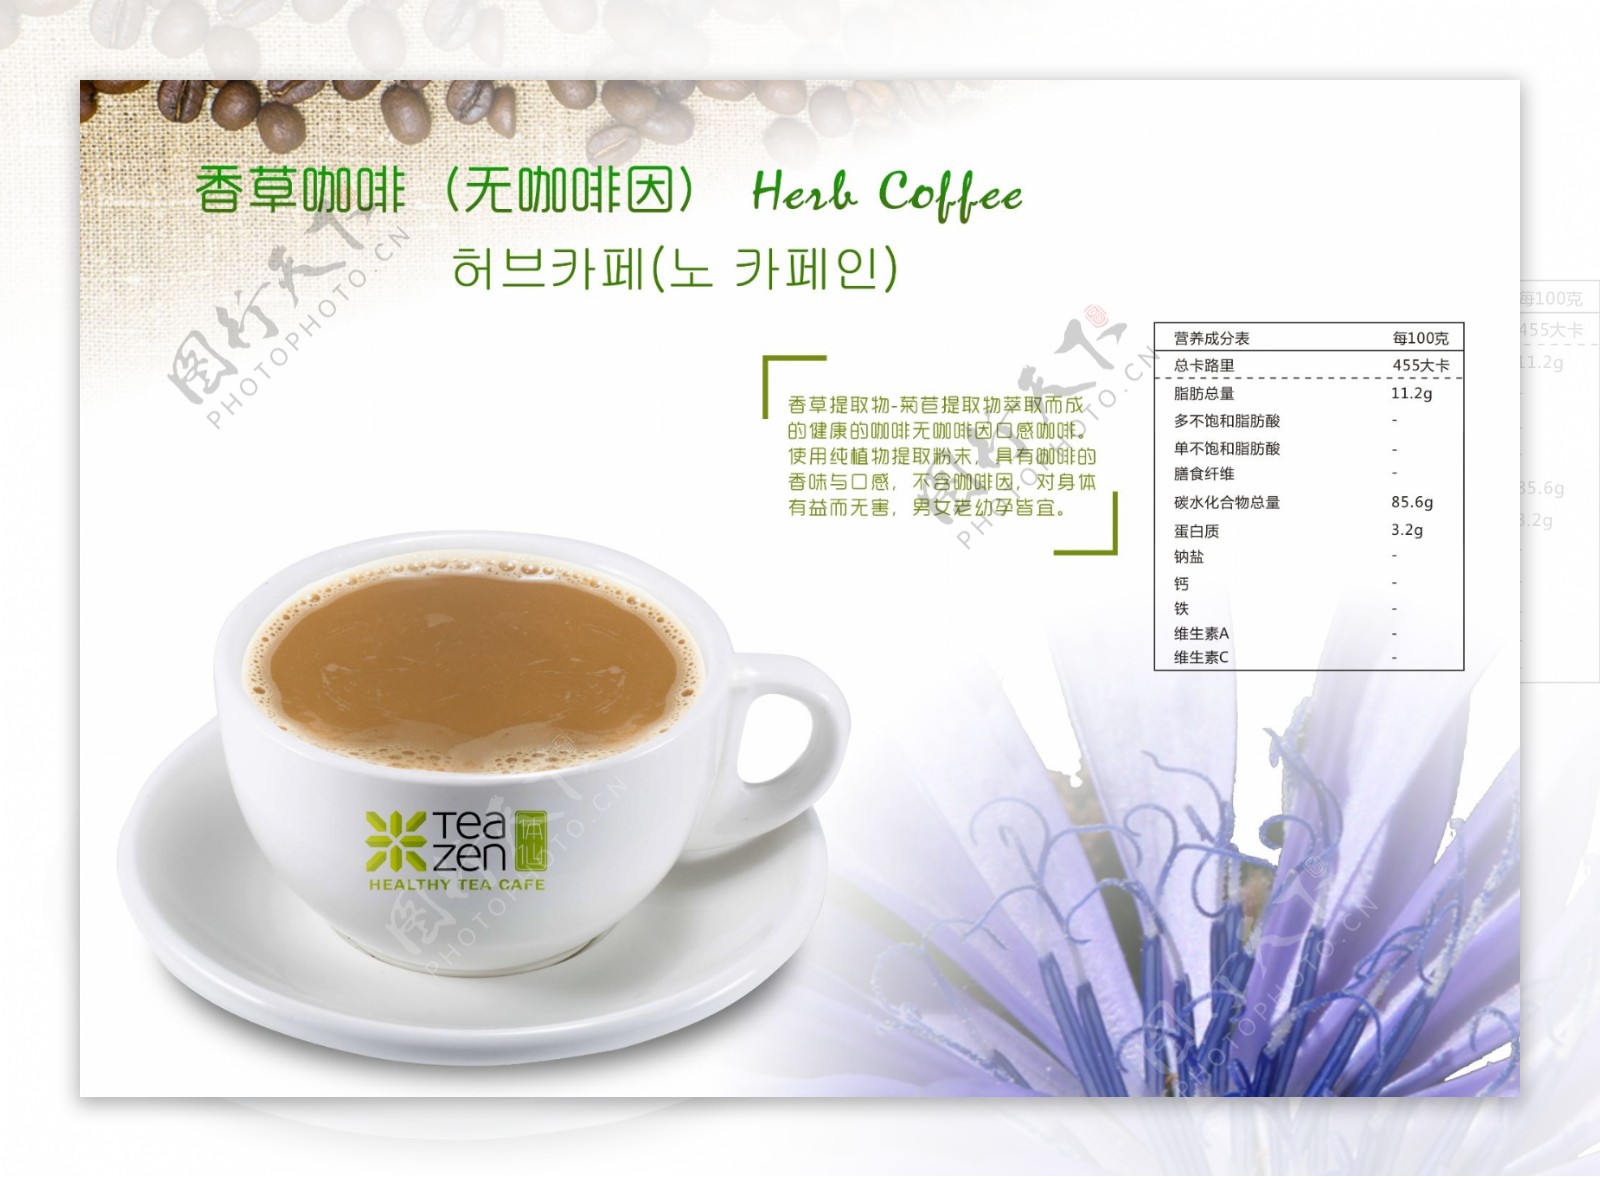 韩国香草咖啡图片